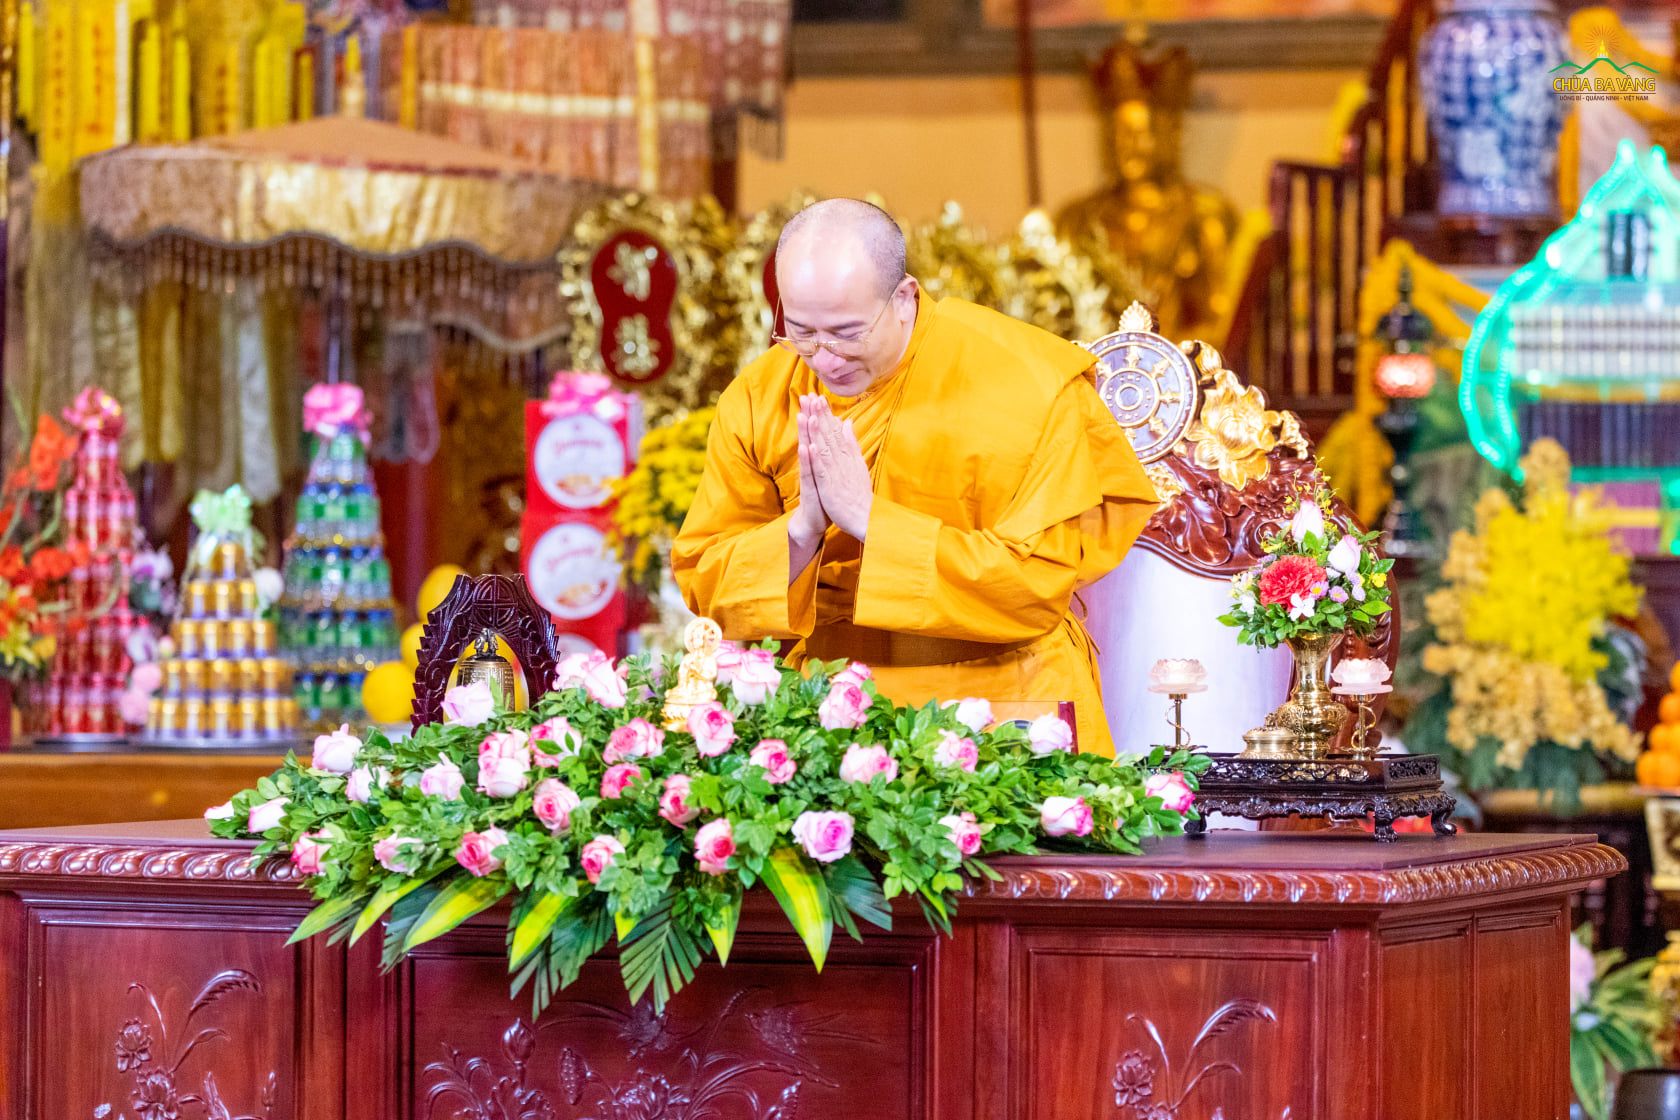 Sư Phụ Thích Trúc Thái Minh quang lâm chứng dự chương trình văn nghệ “Bát cháo sữa của Nàng Sujata và sự kiện Đức Phật thành đạo”